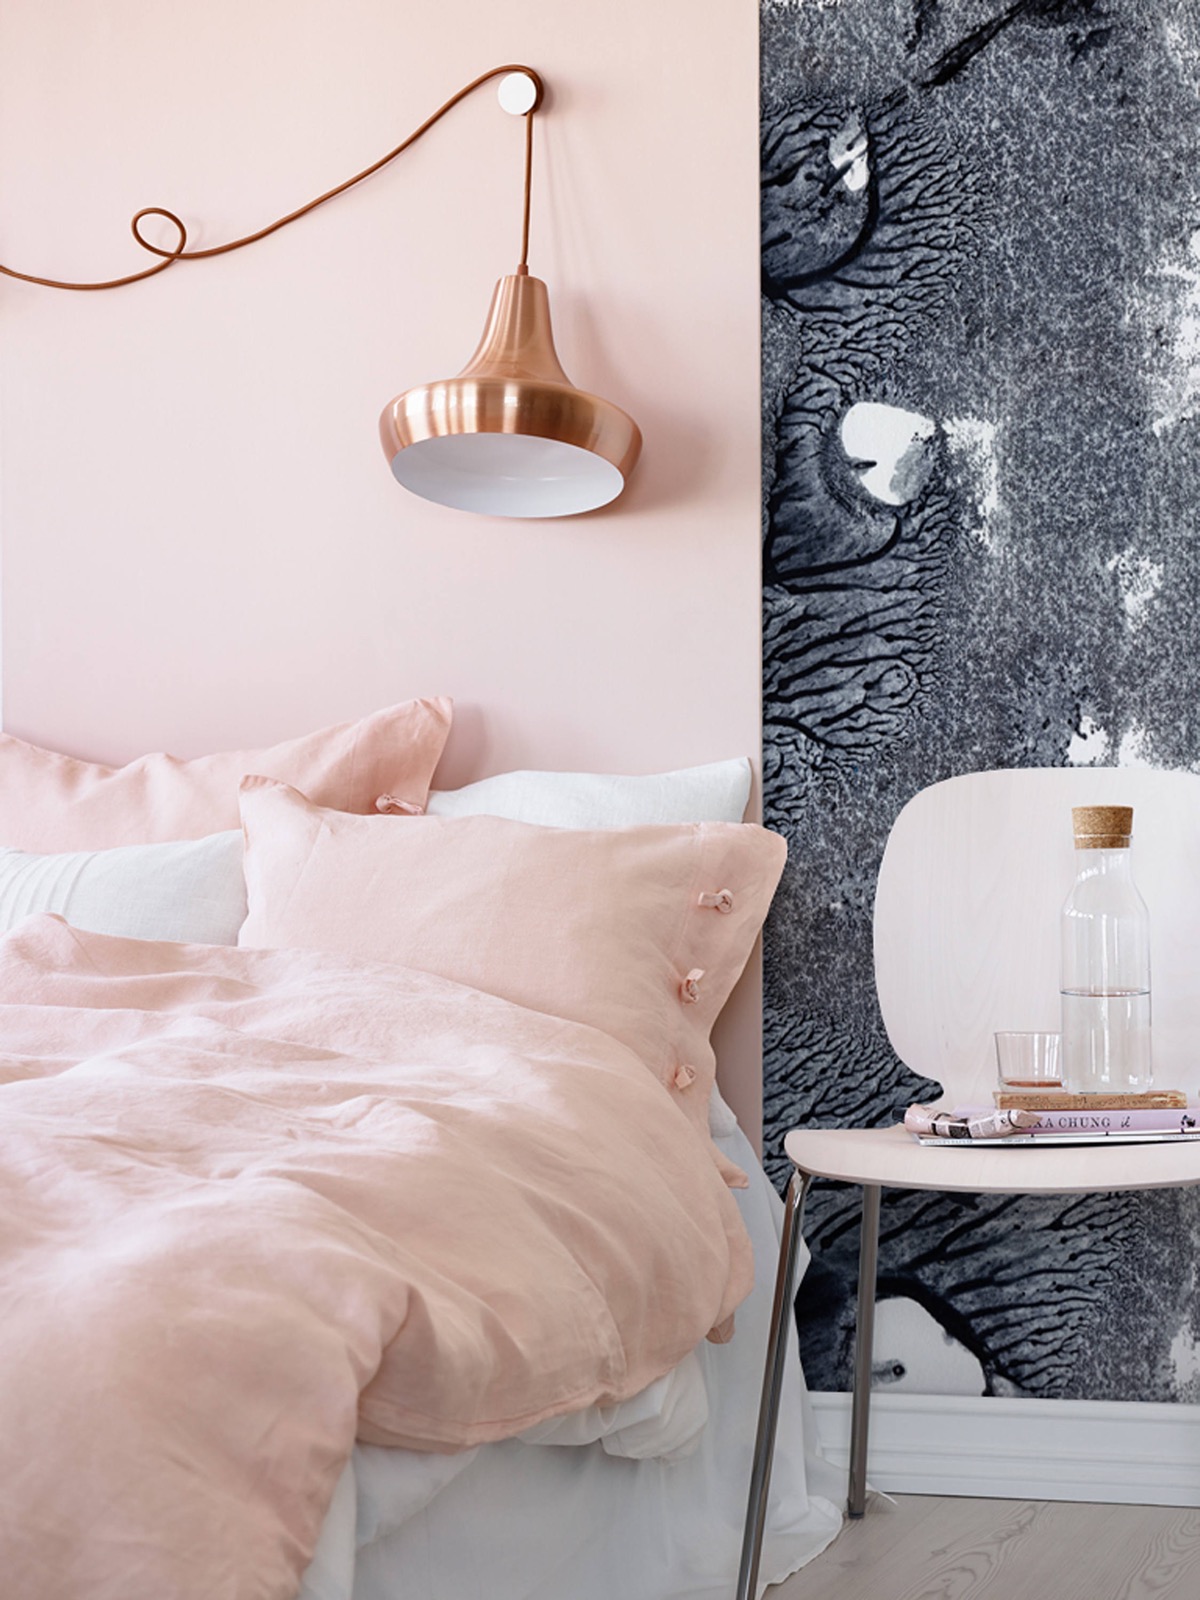 Bộ chăn gối màu hồng pastel mềm mại nổi bật trên ga trải giường màu trắng tinh khôi tạo nên vẻ đẹp nữ tính. Bức tường chia thành hai phần với gam màu hồng và xám cho sự tương phản nhẹ nhàng. Đặc biệt nhất là chiếc đèn thả trần sắc sảo, bóng đẹp.